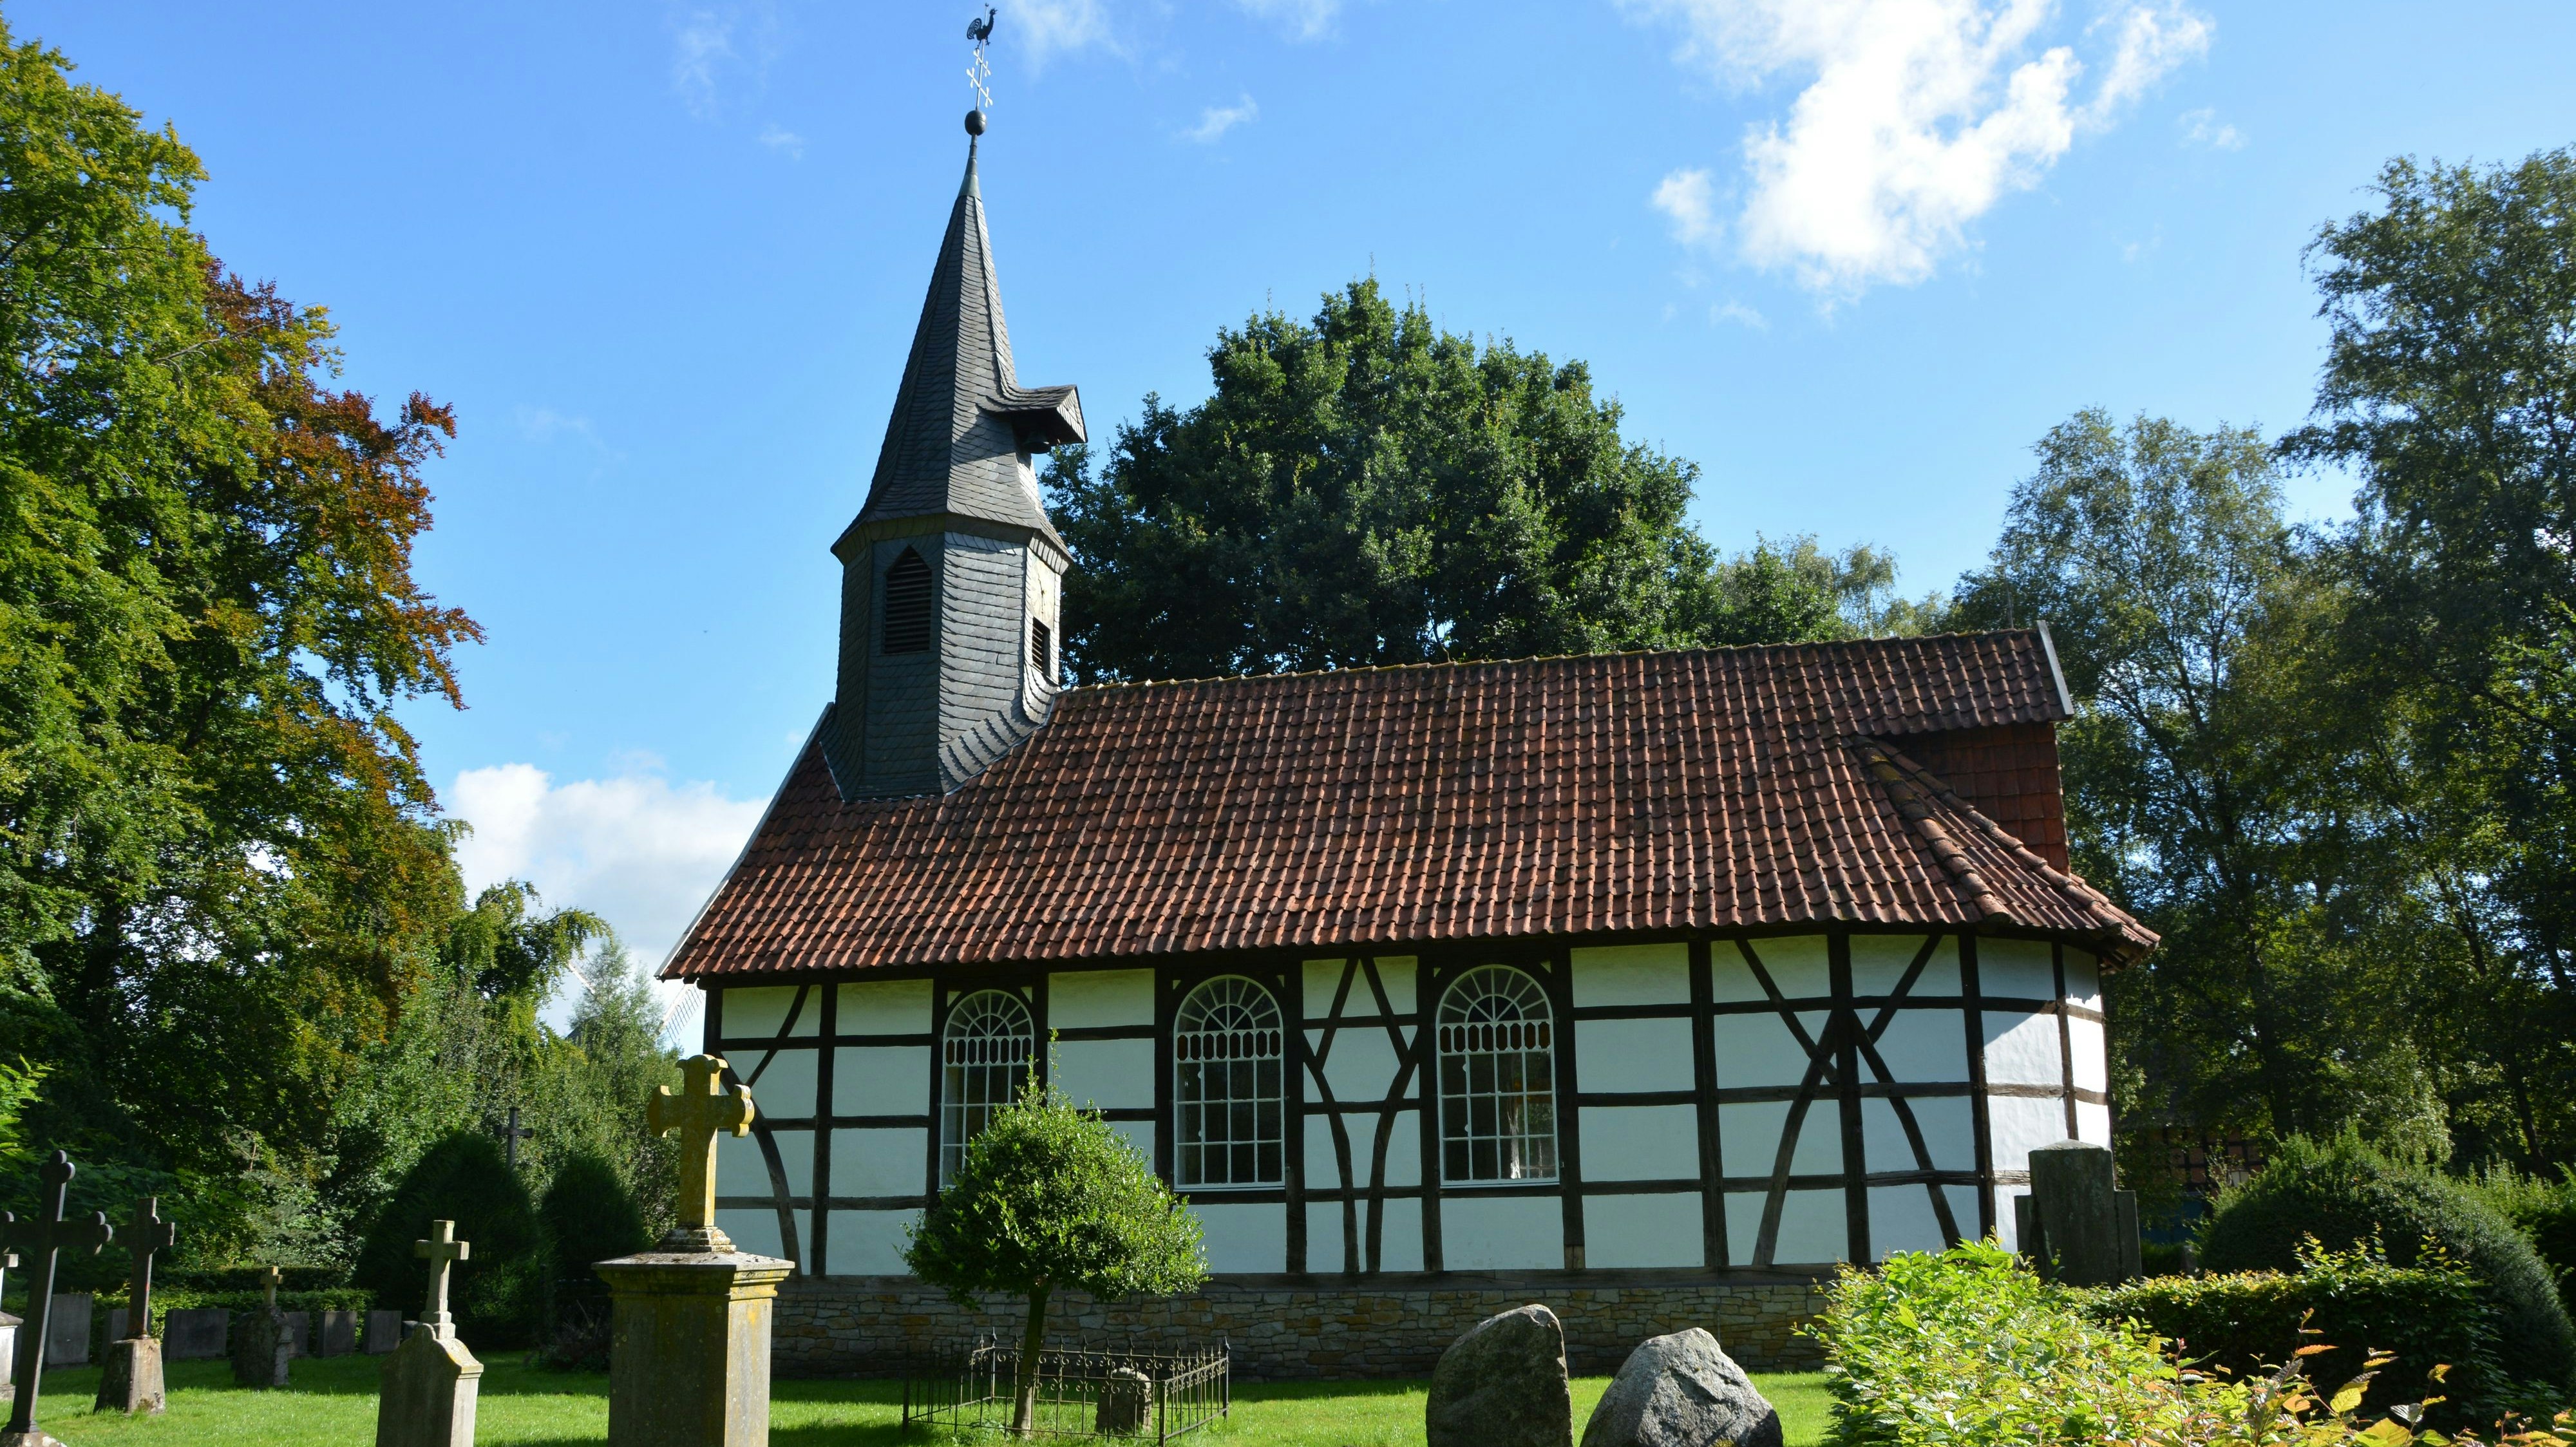 Aus dem Jahr 1699: Die Kirche wurde in Klein Escherde im Kreis Hildesheim gebaut. Foto: Hermes